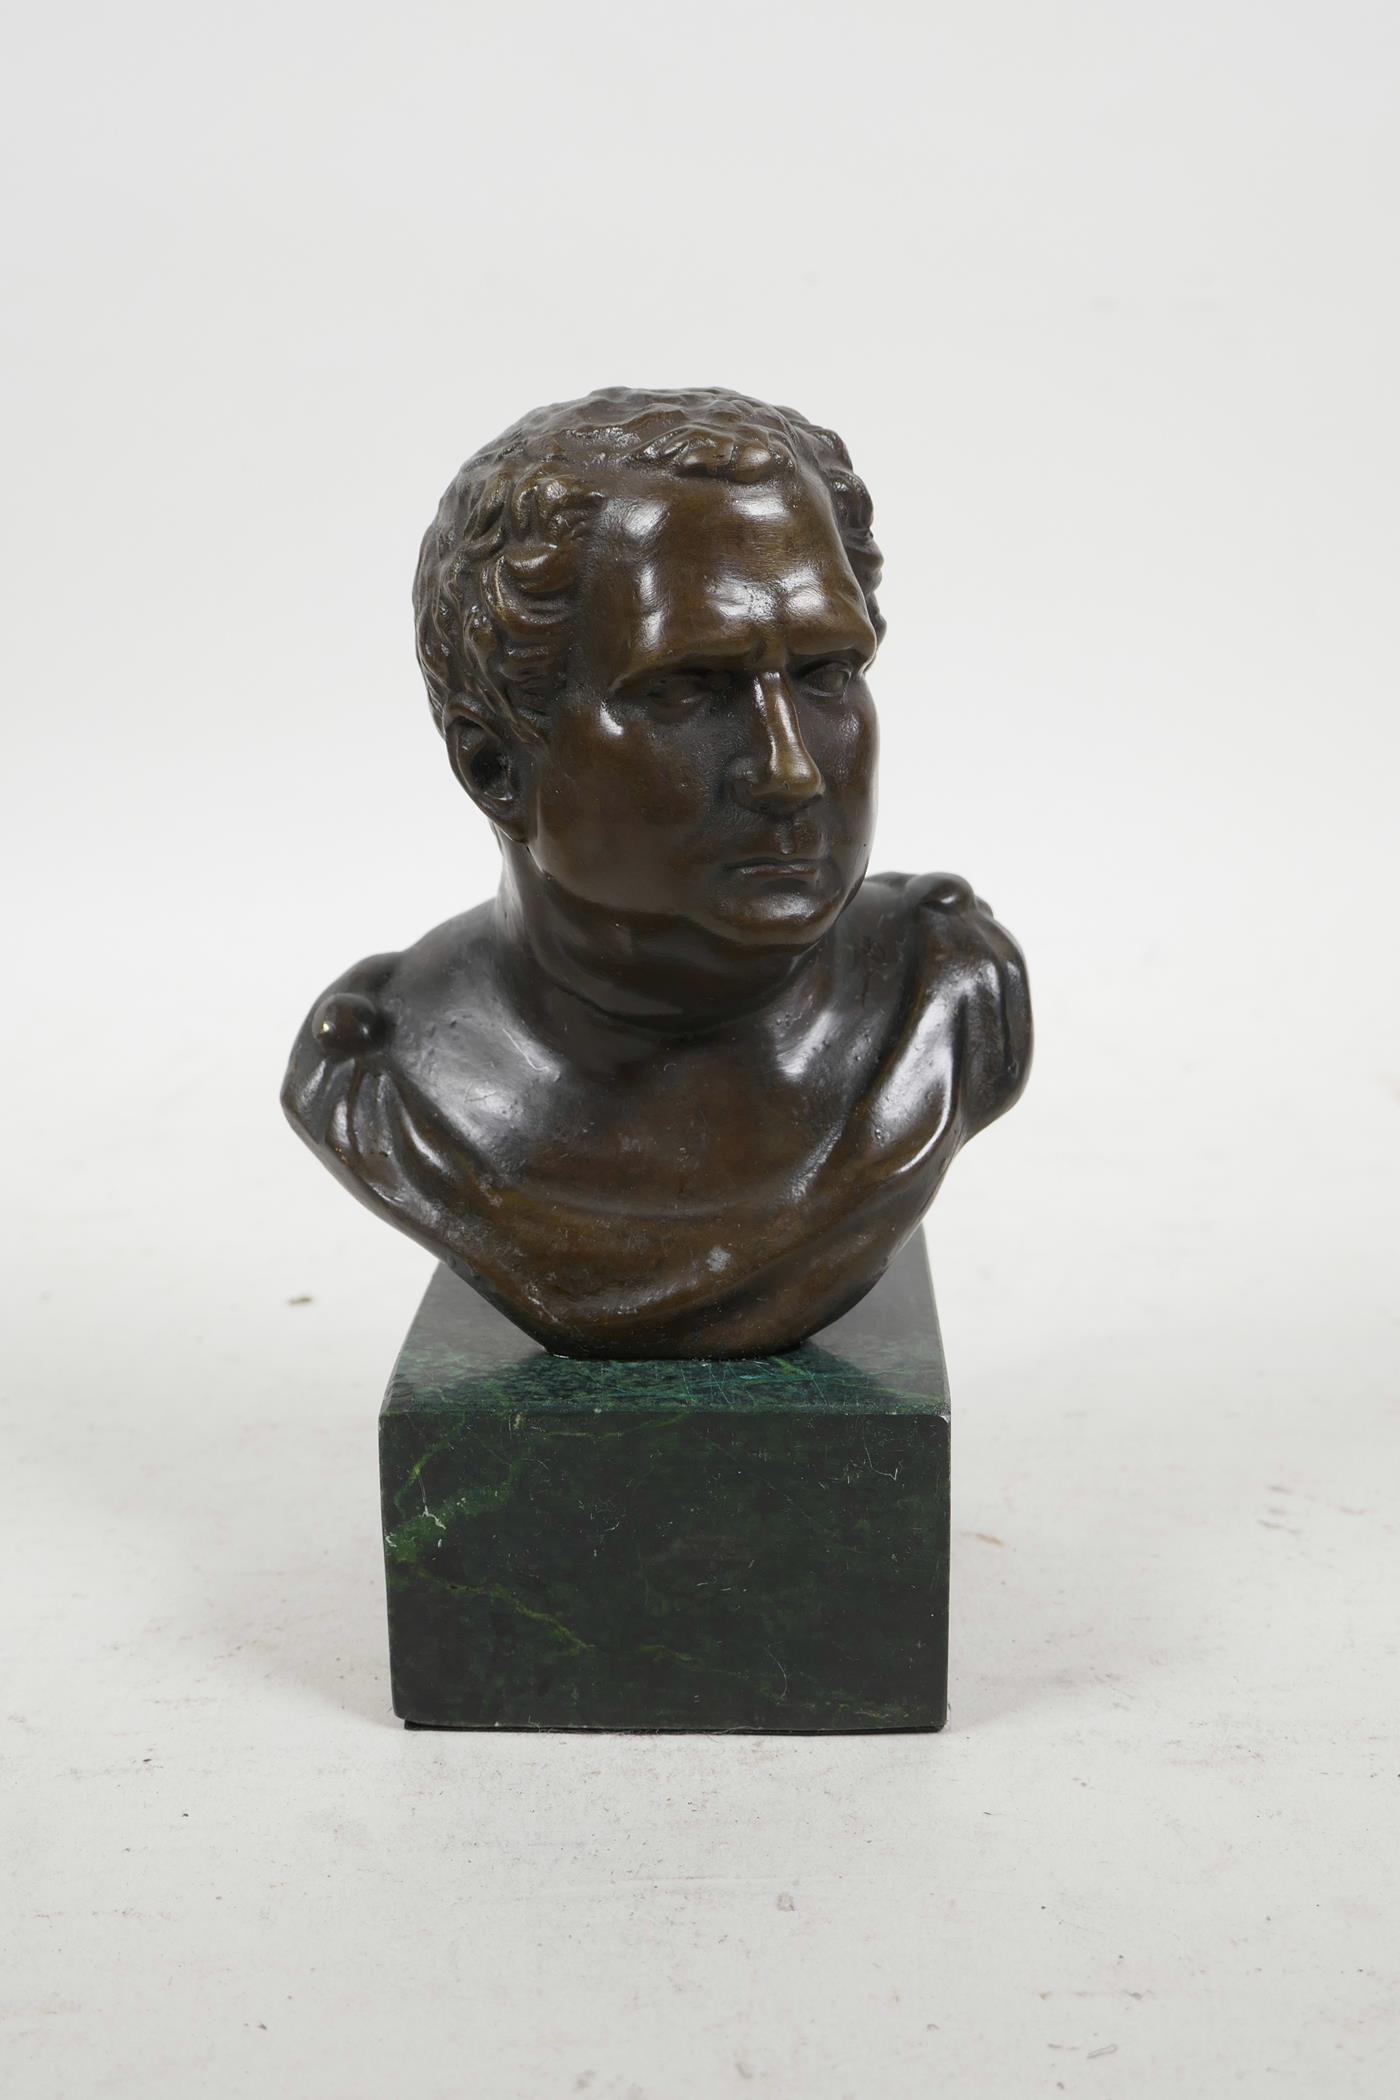 A bronze bust of a Roman emperor, 5½" high